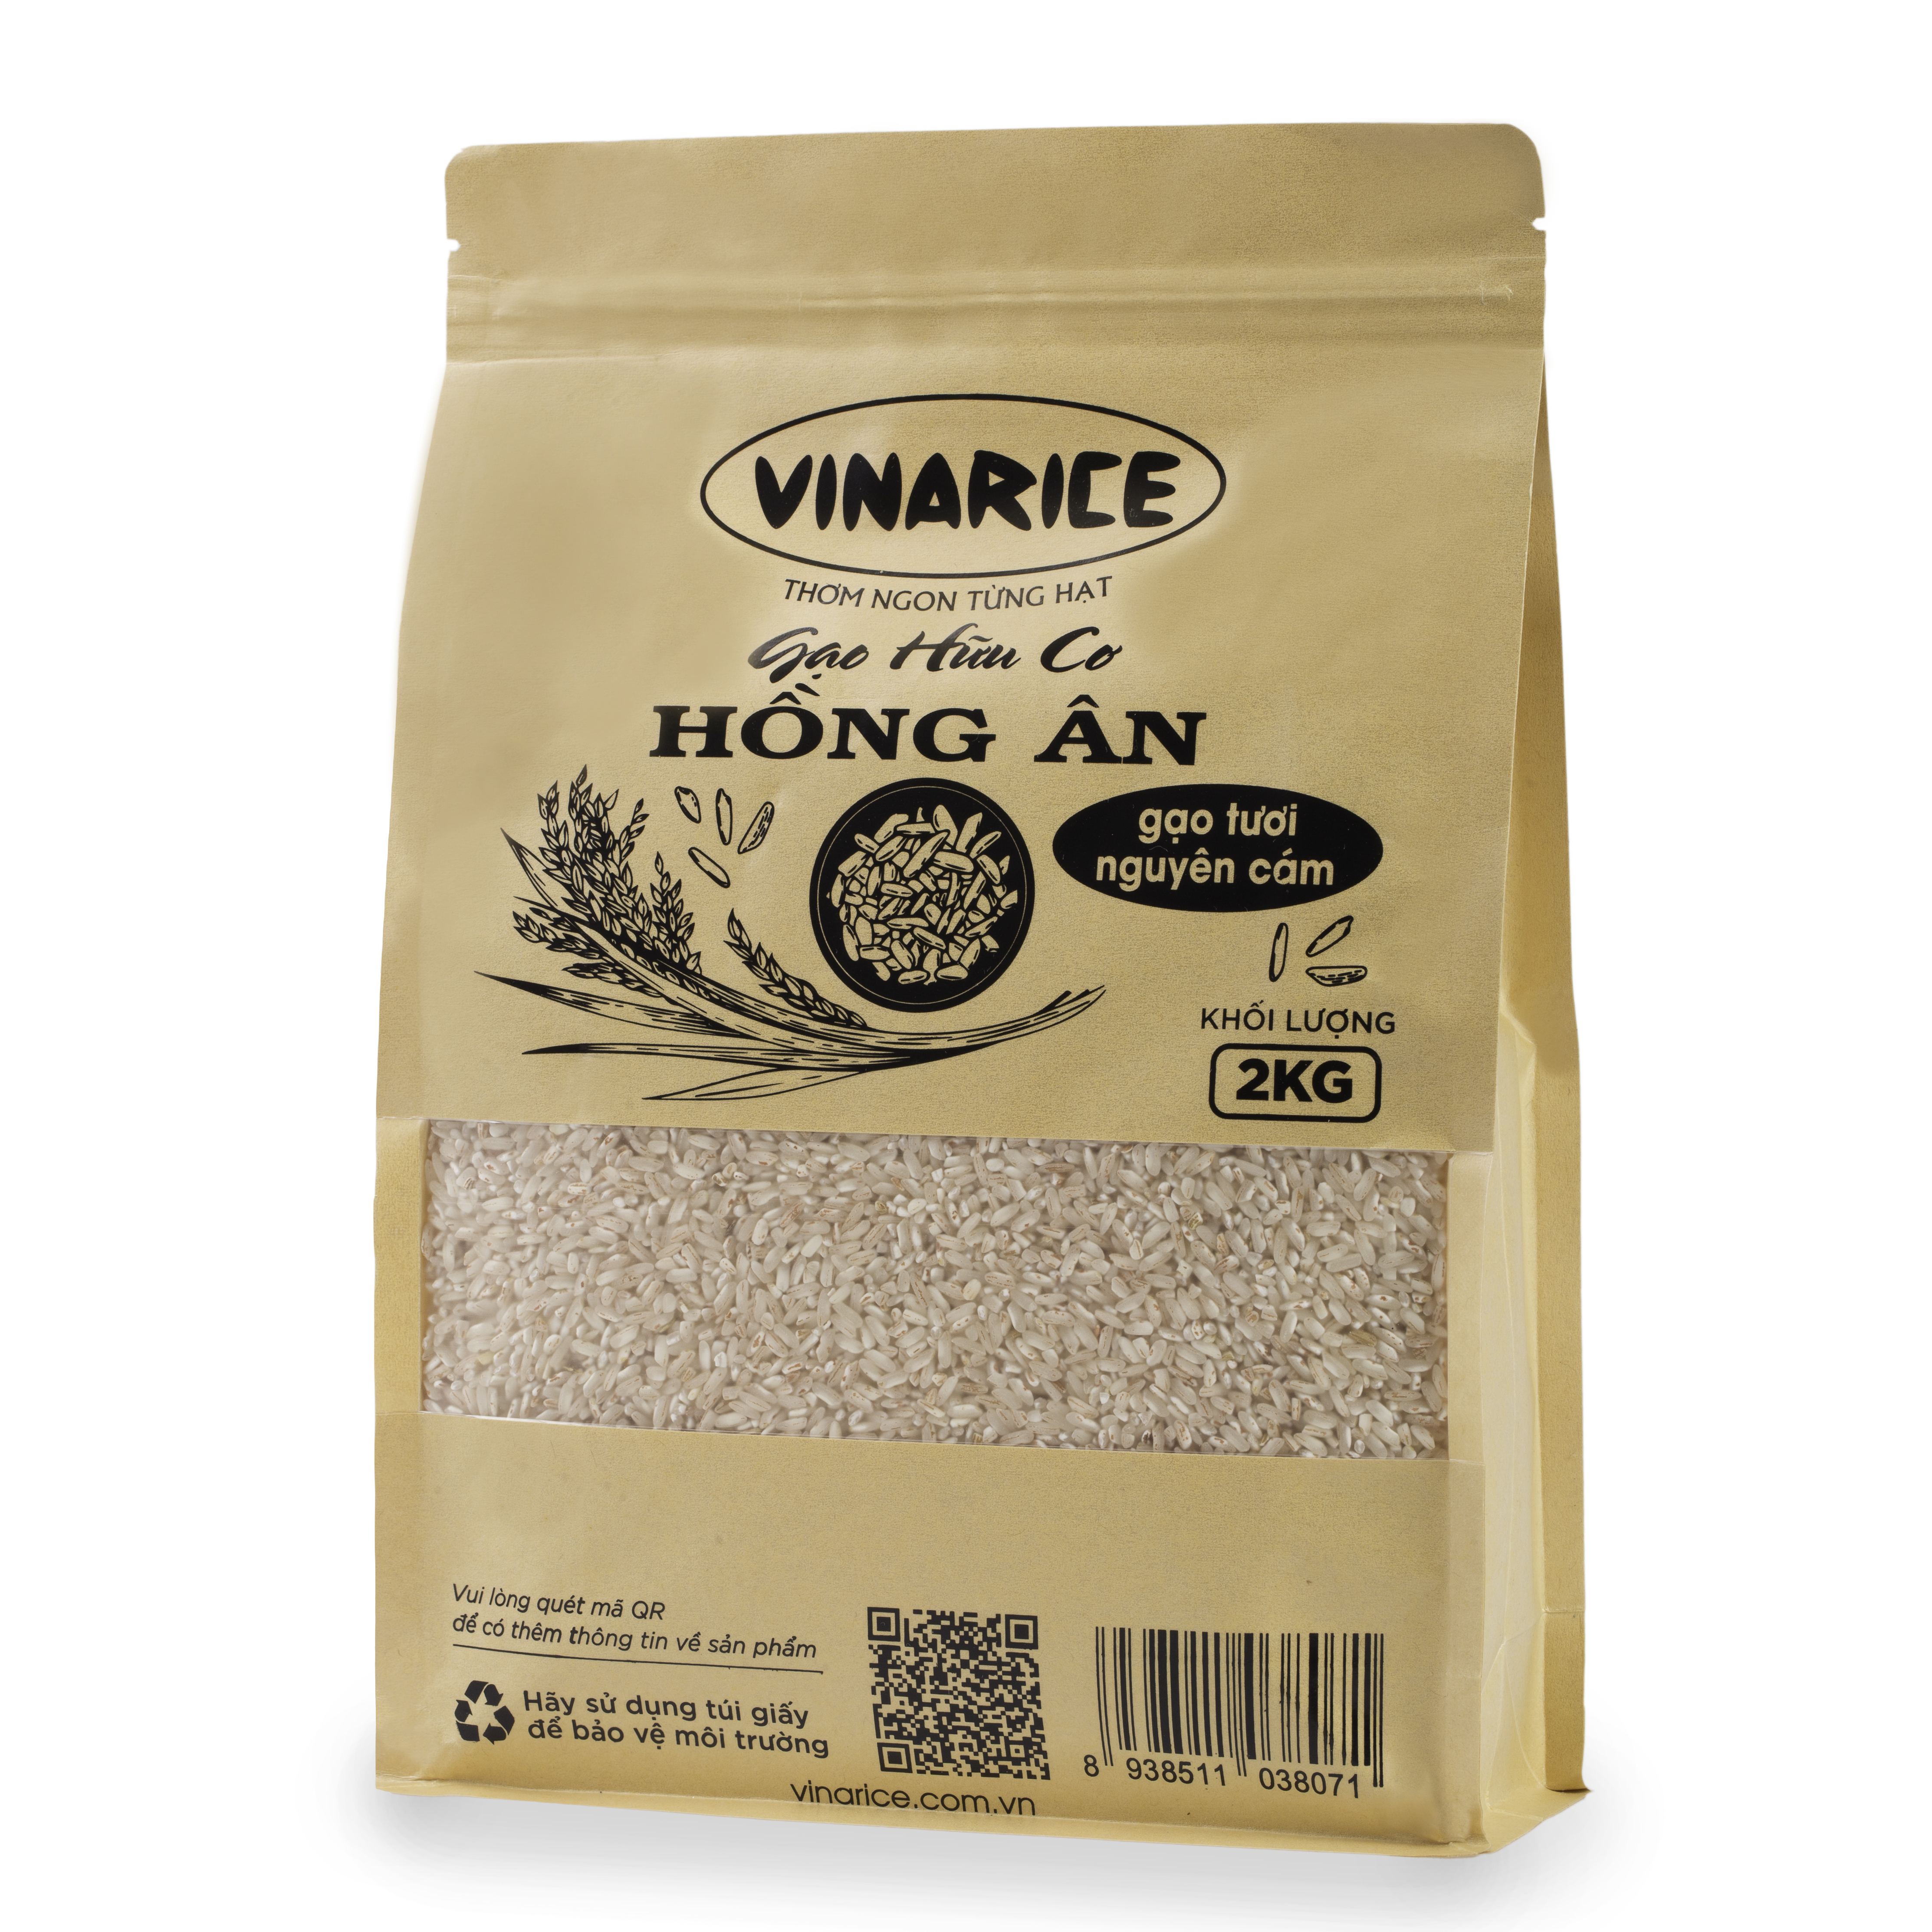 Gạo Hữu Cơ Hồng Ân 2kg - gạo tươi nguyên cám, nhiều dinh dưỡng tốt cho sức khỏe